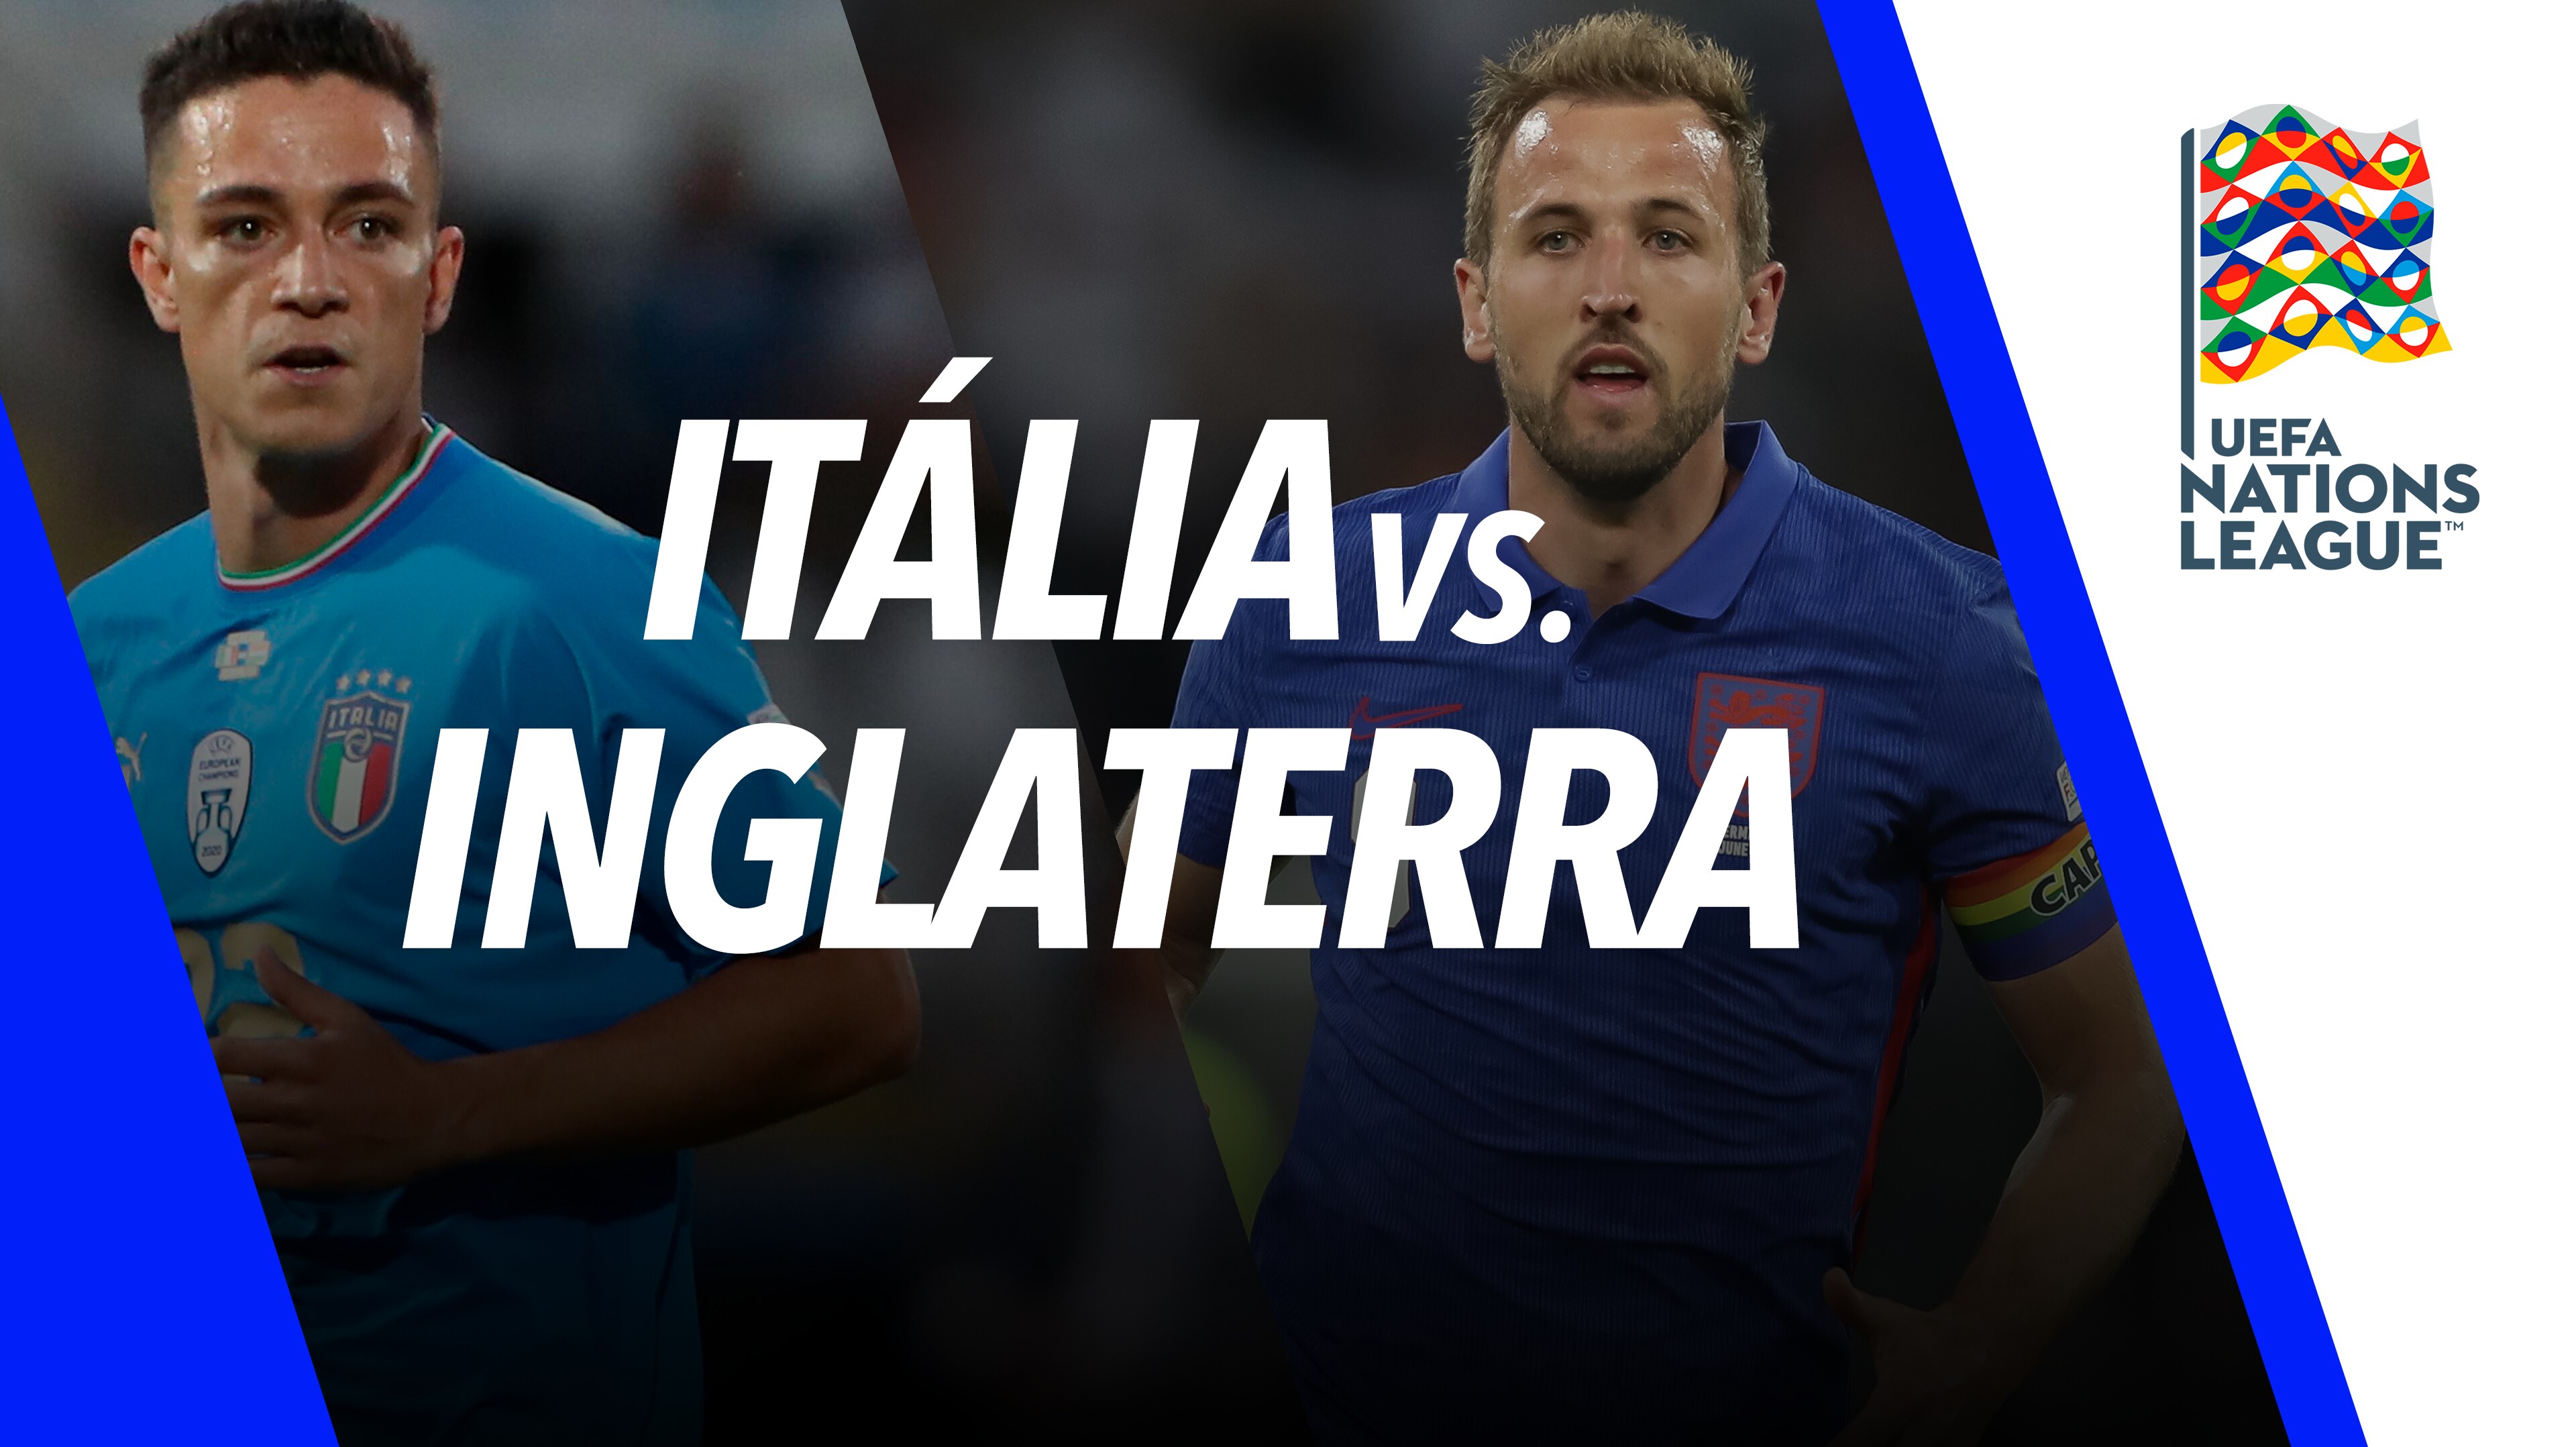 Itália x Inglaterra ao vivo: onde ver online o jogo da UEFA Nations League